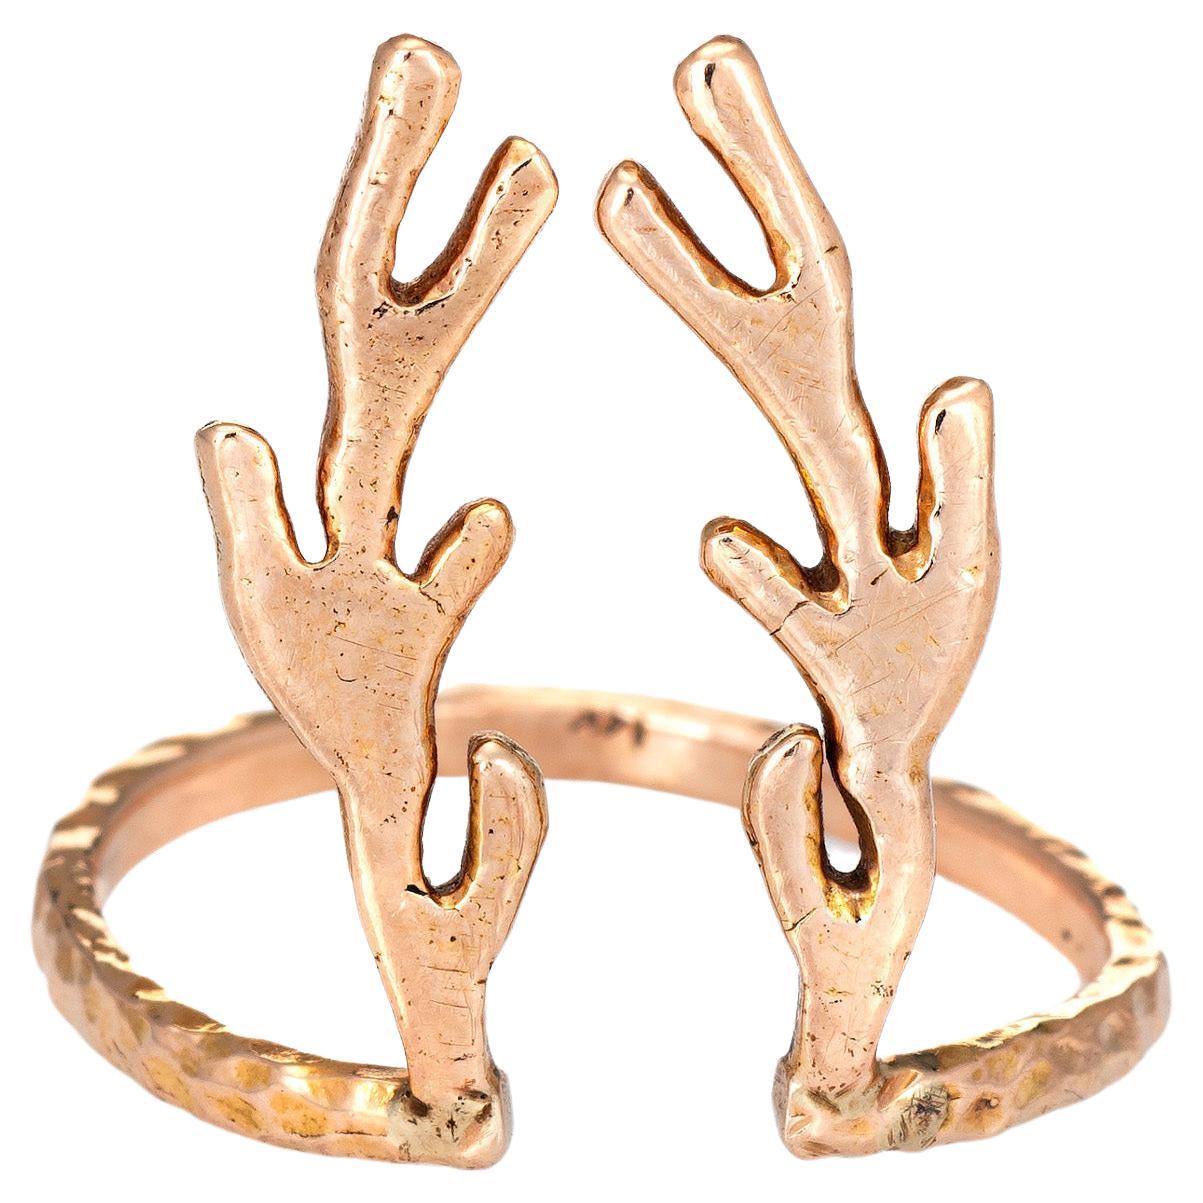 Deer Antlers Ring Estate 14k Rose Gold Vintage Fine Animal Horn Spike Jewelry For Sale